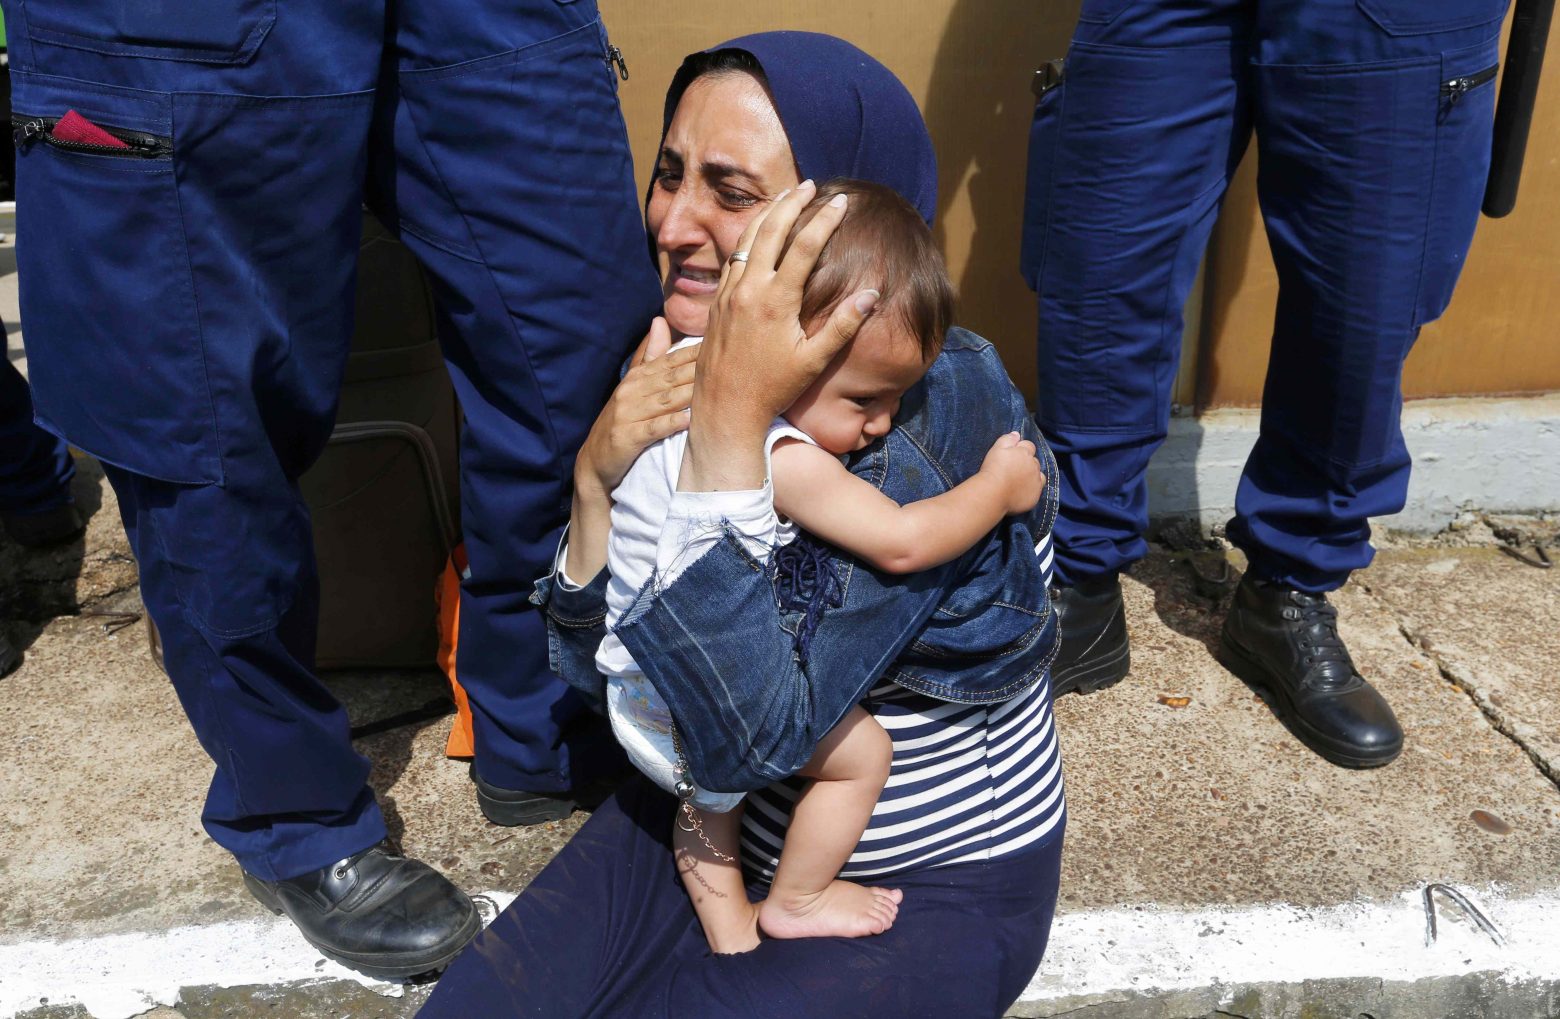 Στην αγκαλιά της μάνας: Η μητέρα - πρόσφυγας μέσα από συγκλονιστικές φωτογραφίες